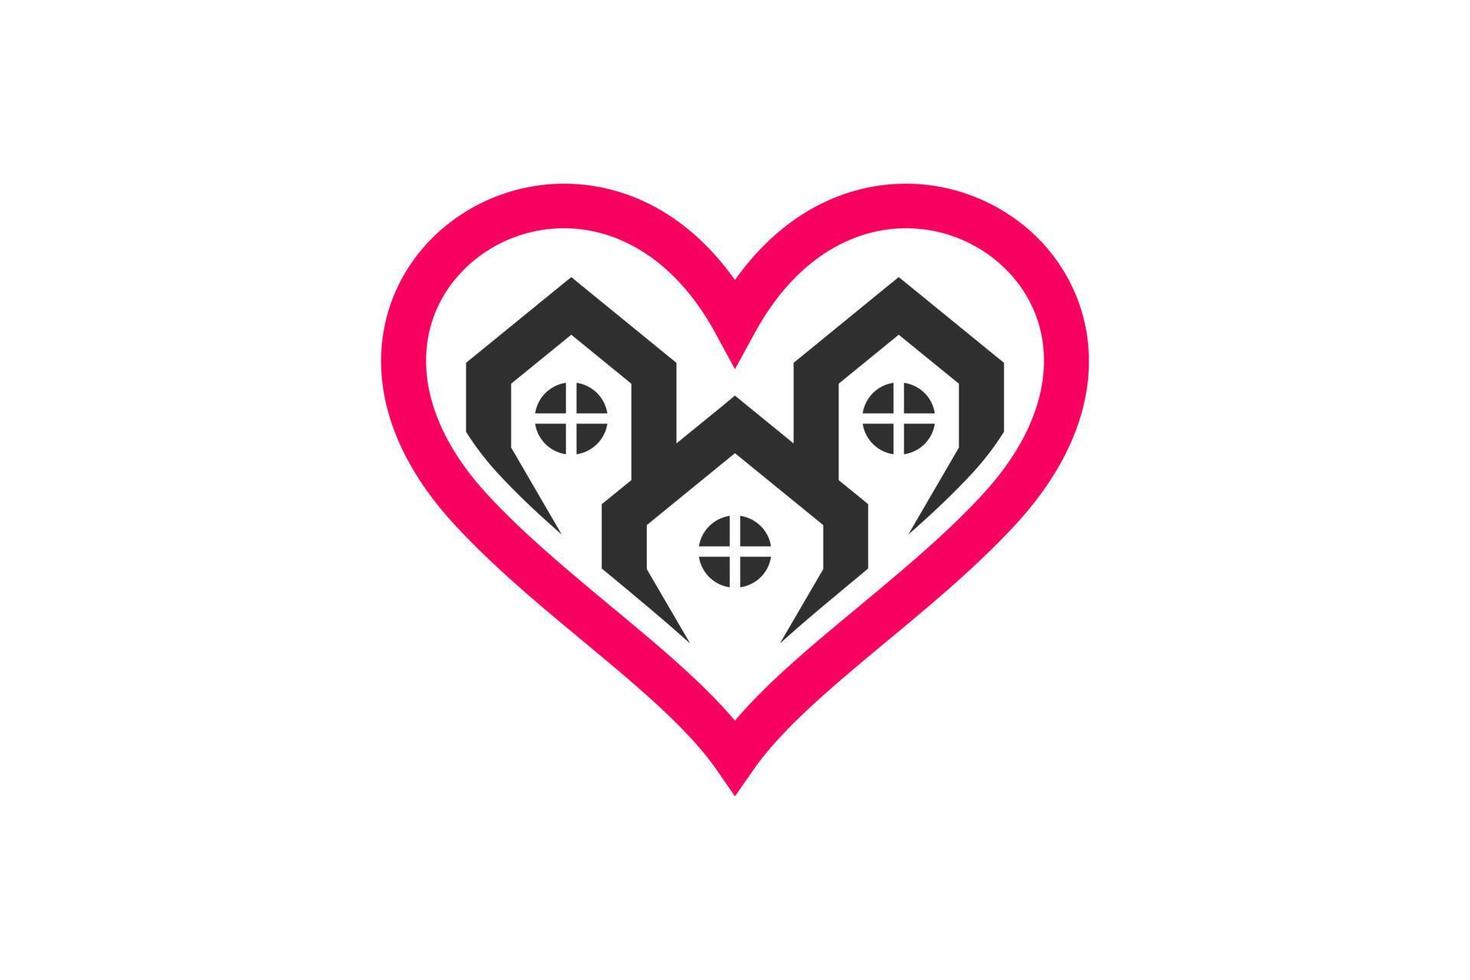 combinaison de conception de logo vectoriel simple maison et amour avec style plat minimaliste